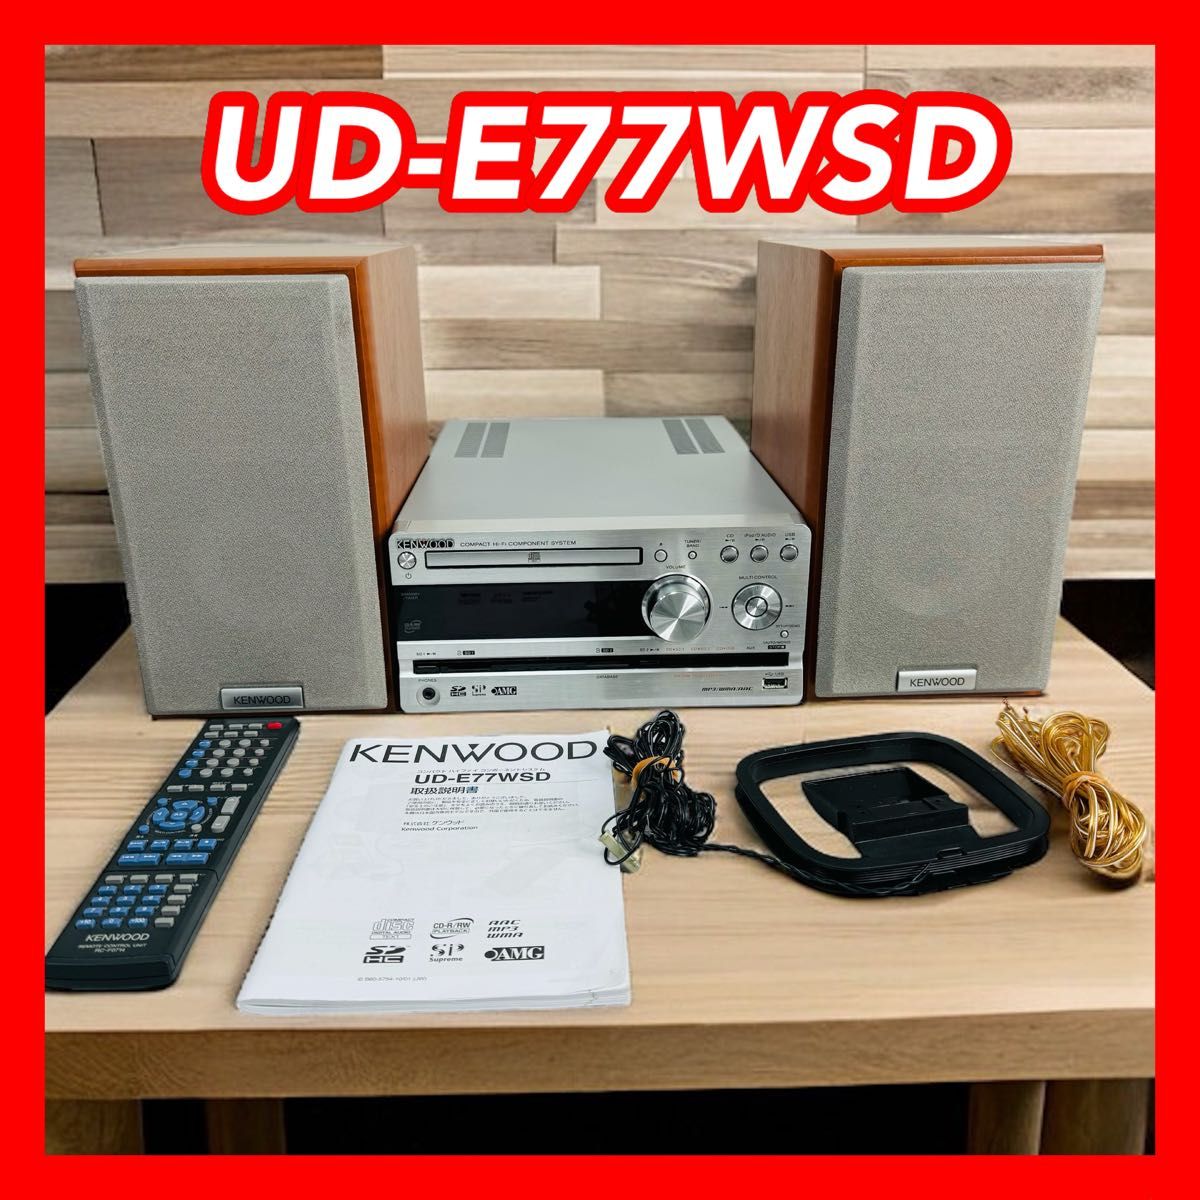 KENWOOD UD-E77WSD SD/USBコンパクトHi-Fiシステム